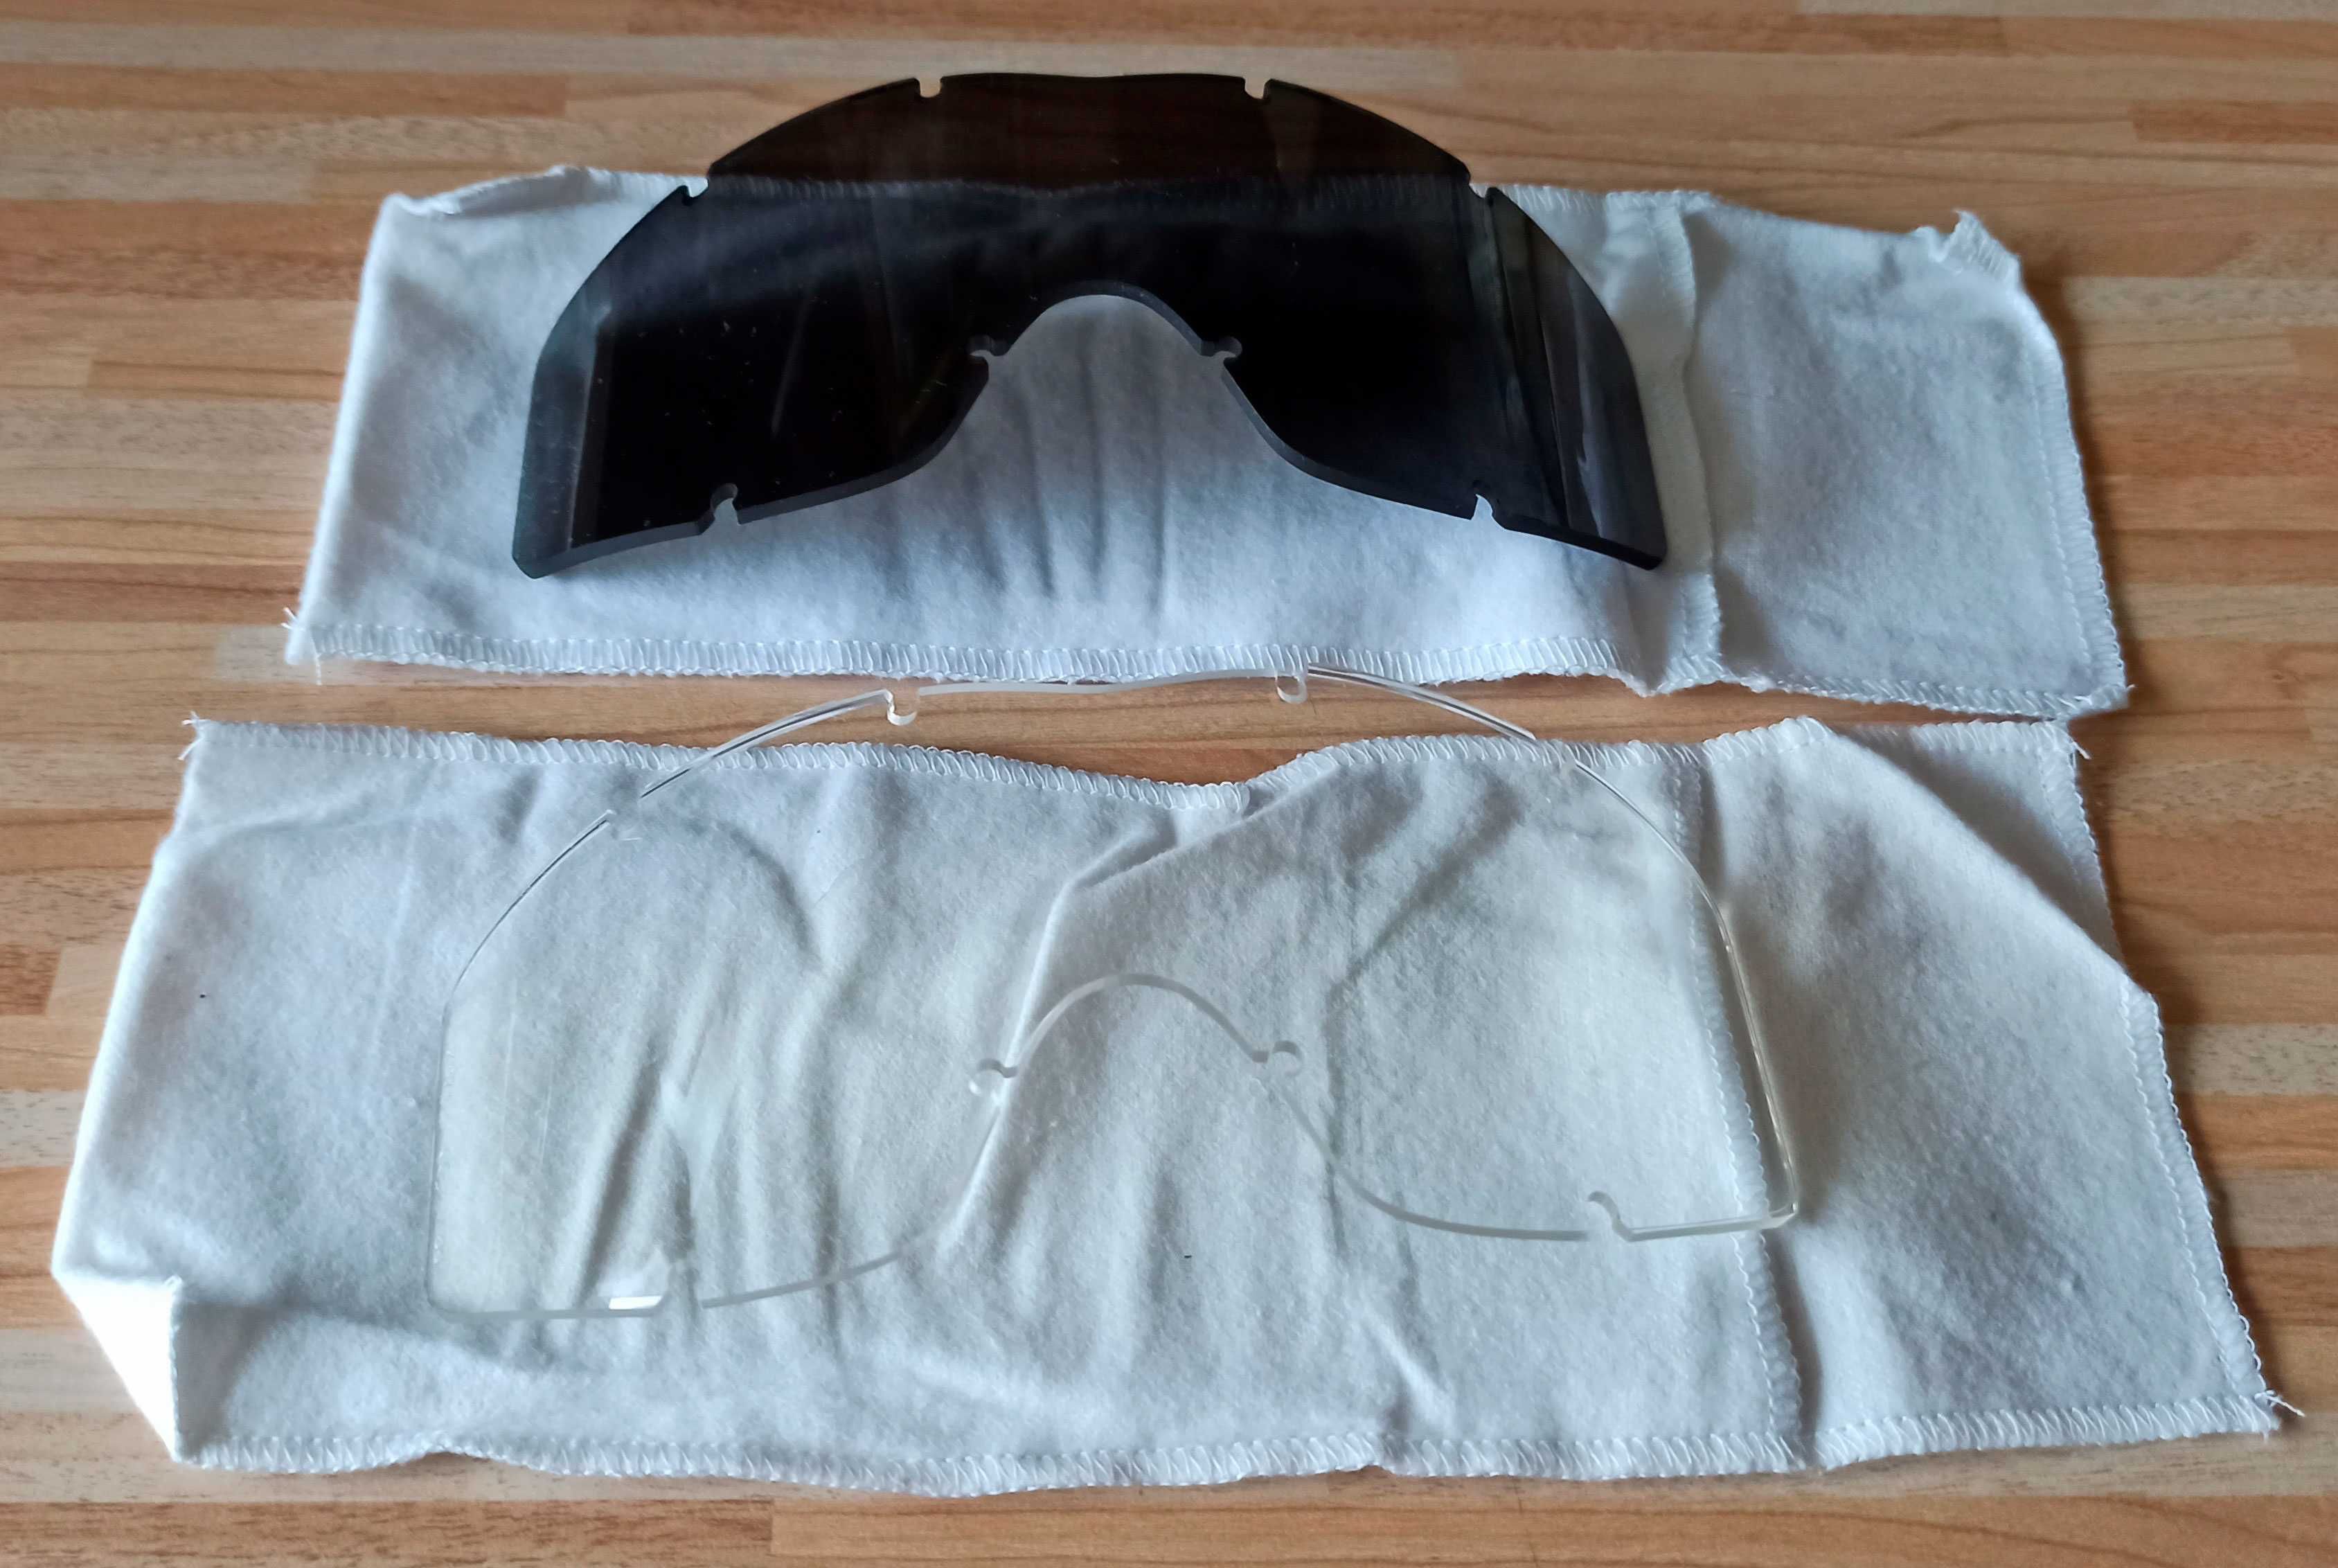 Баллистическая маска очки ESS Profile NVG оригинал США + комплект линз